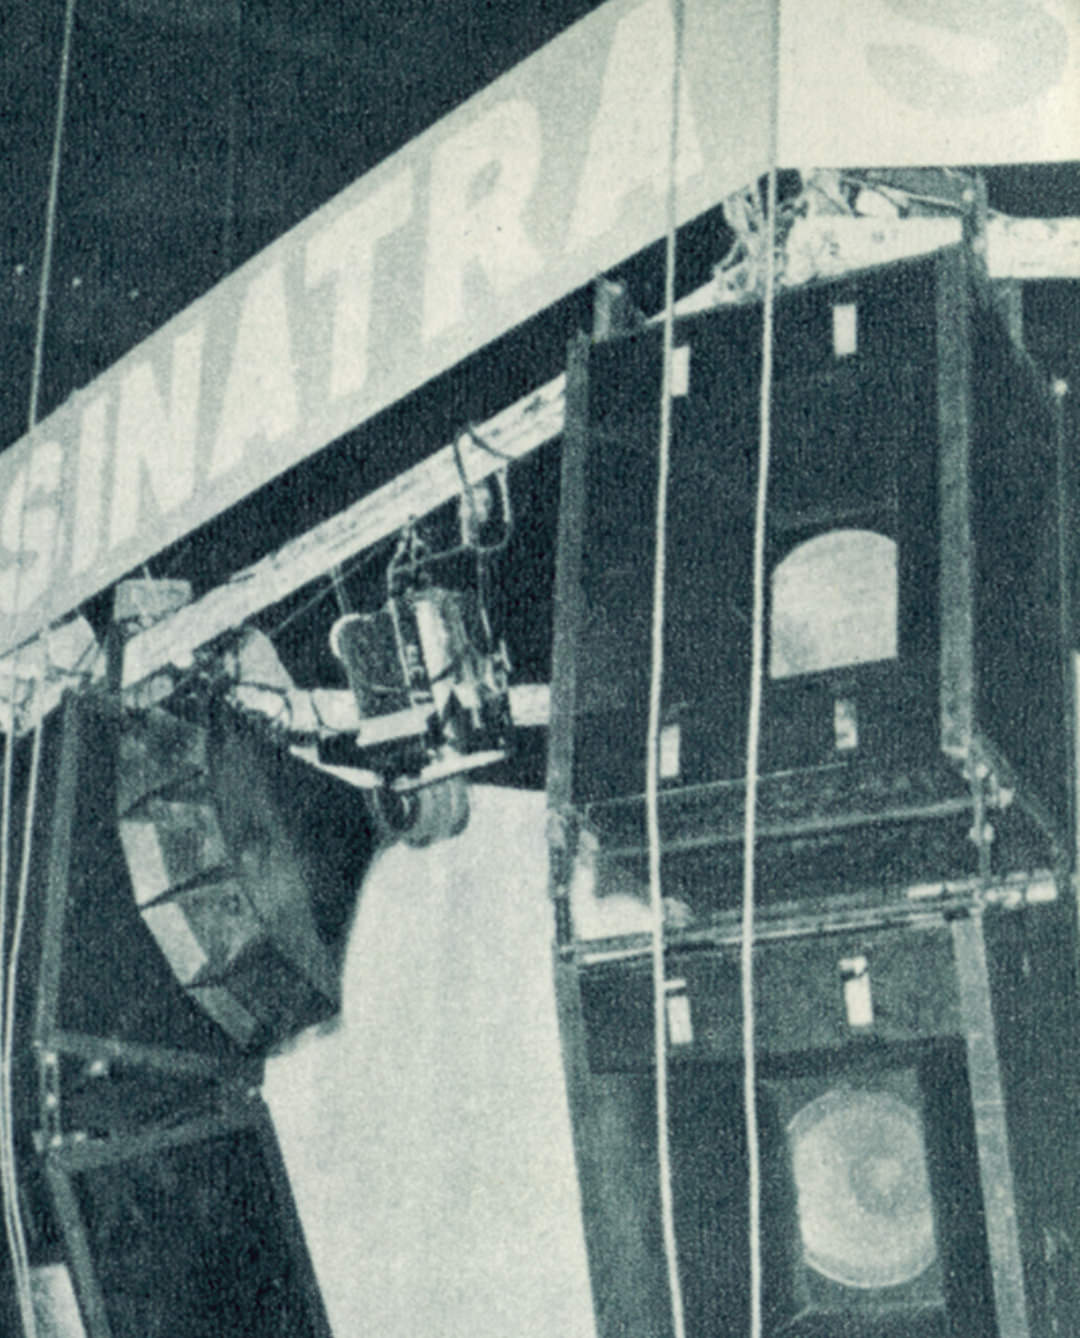 天井から吊ったメインスピーカーシステム（写真：『無線と実験』誠文堂新光社 刊、1974年8月号より転載）